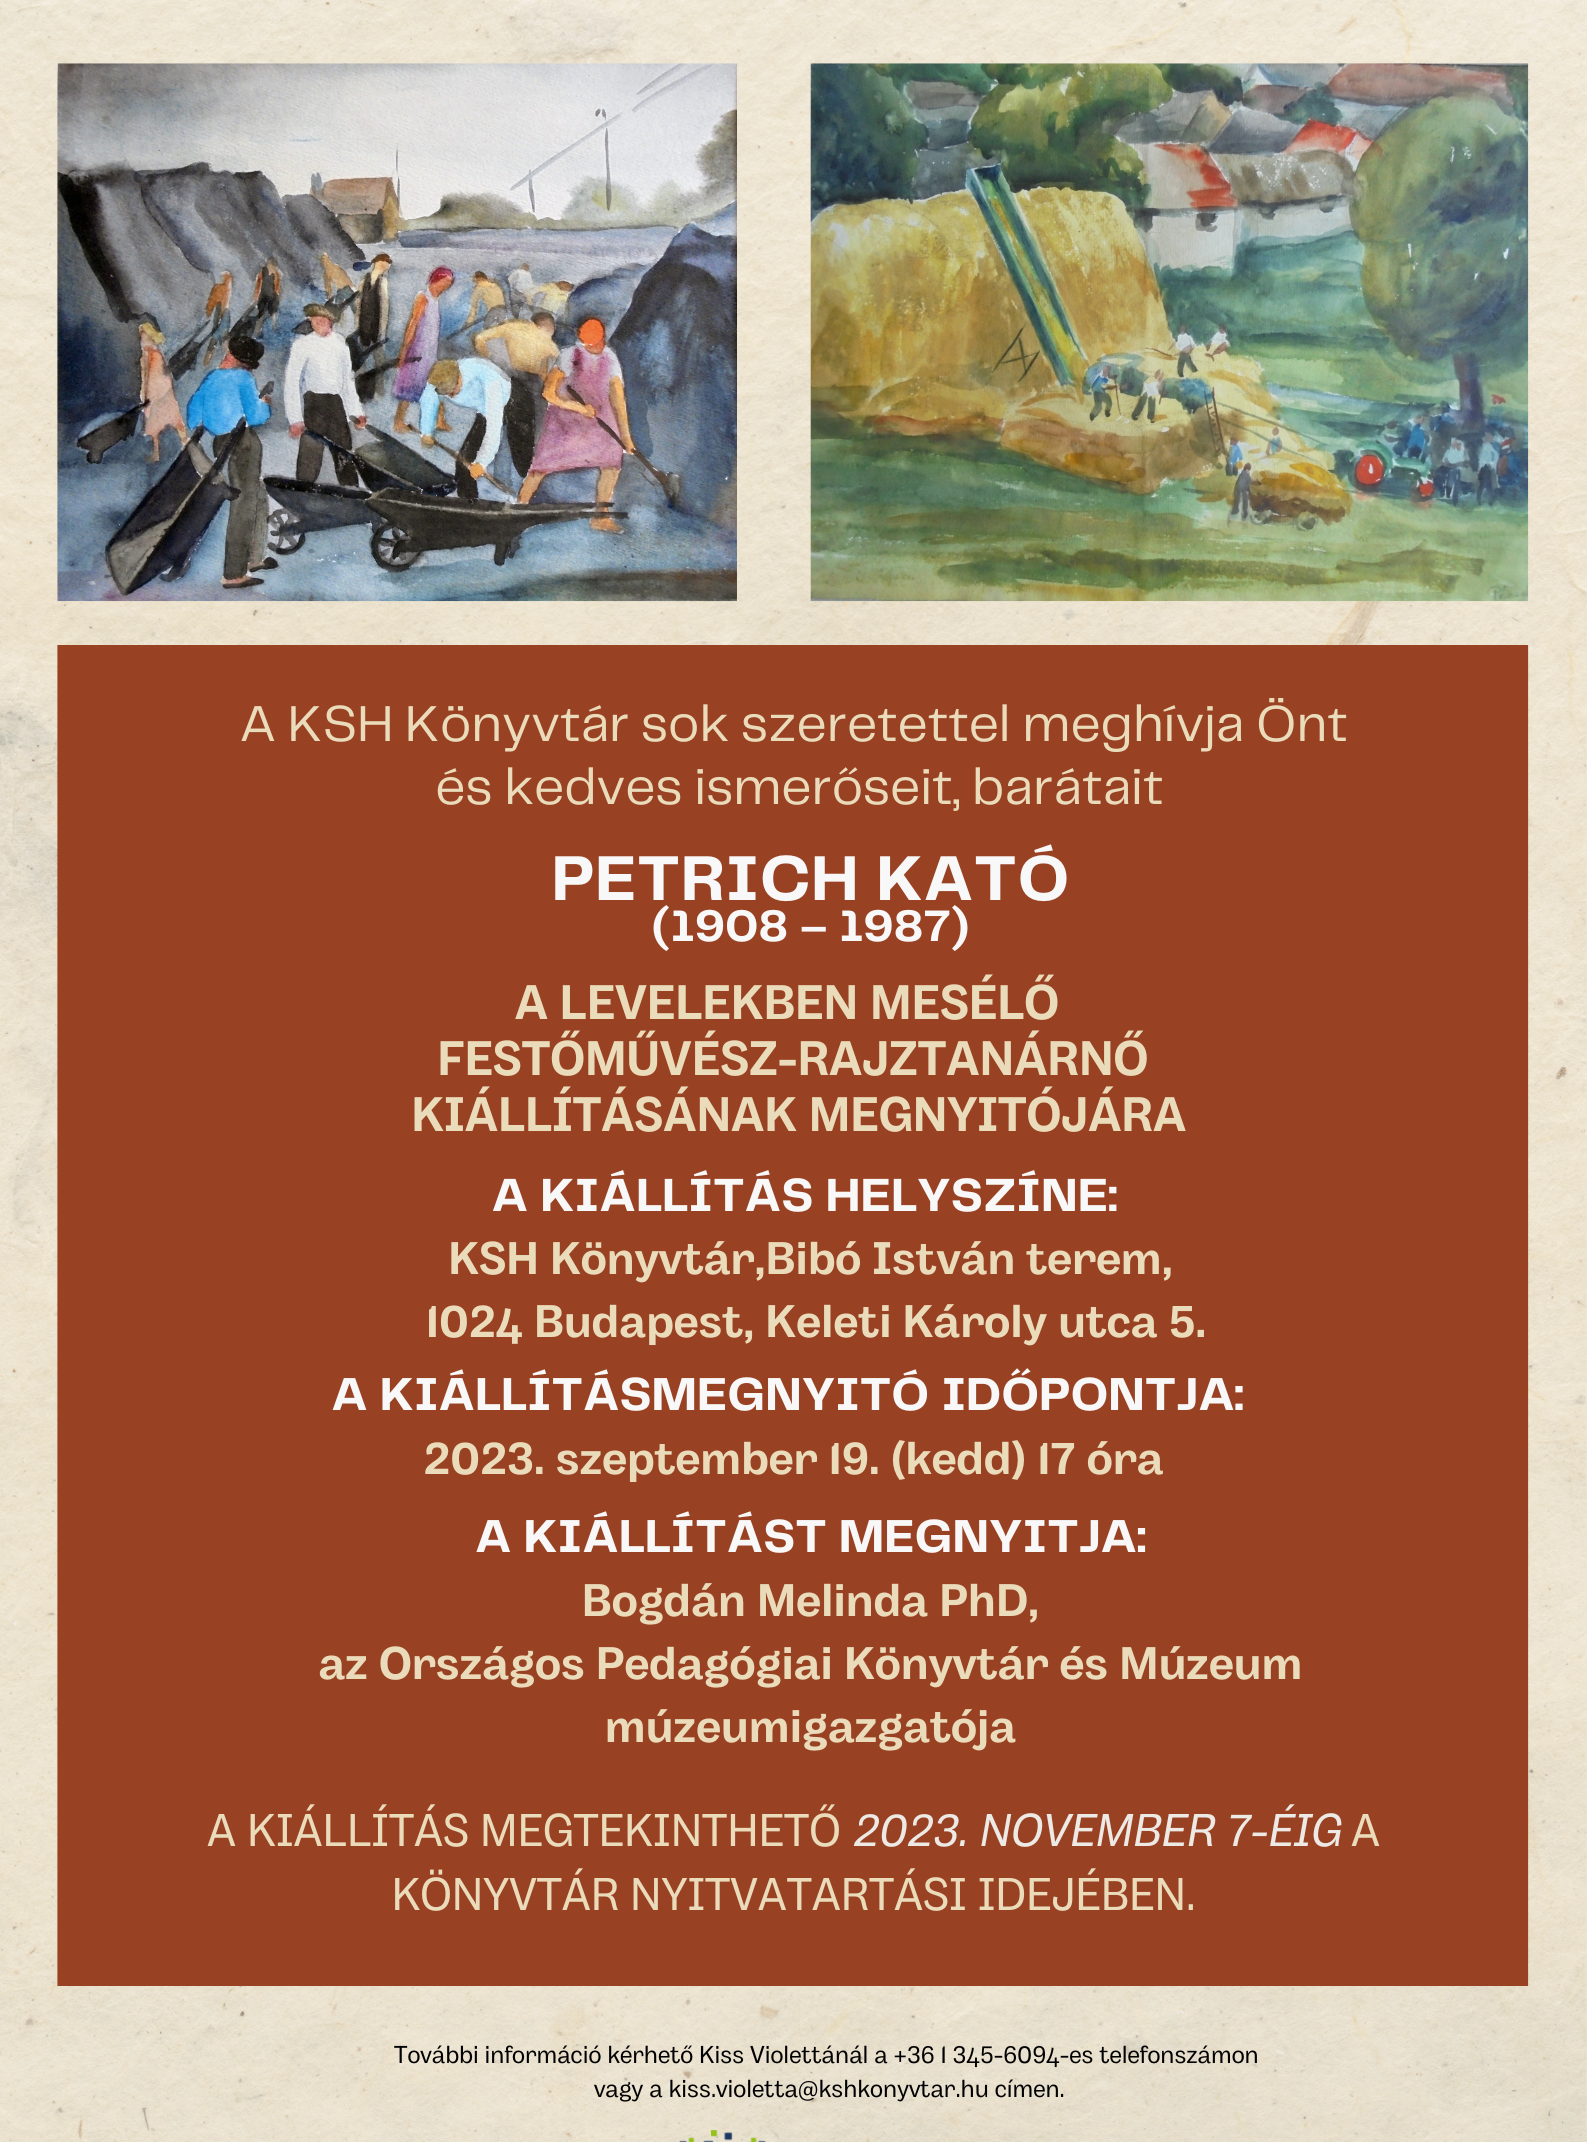 Petrich Kató: A levelekben mesélő festőművész-rajztanárnő kiállításának megnyitója